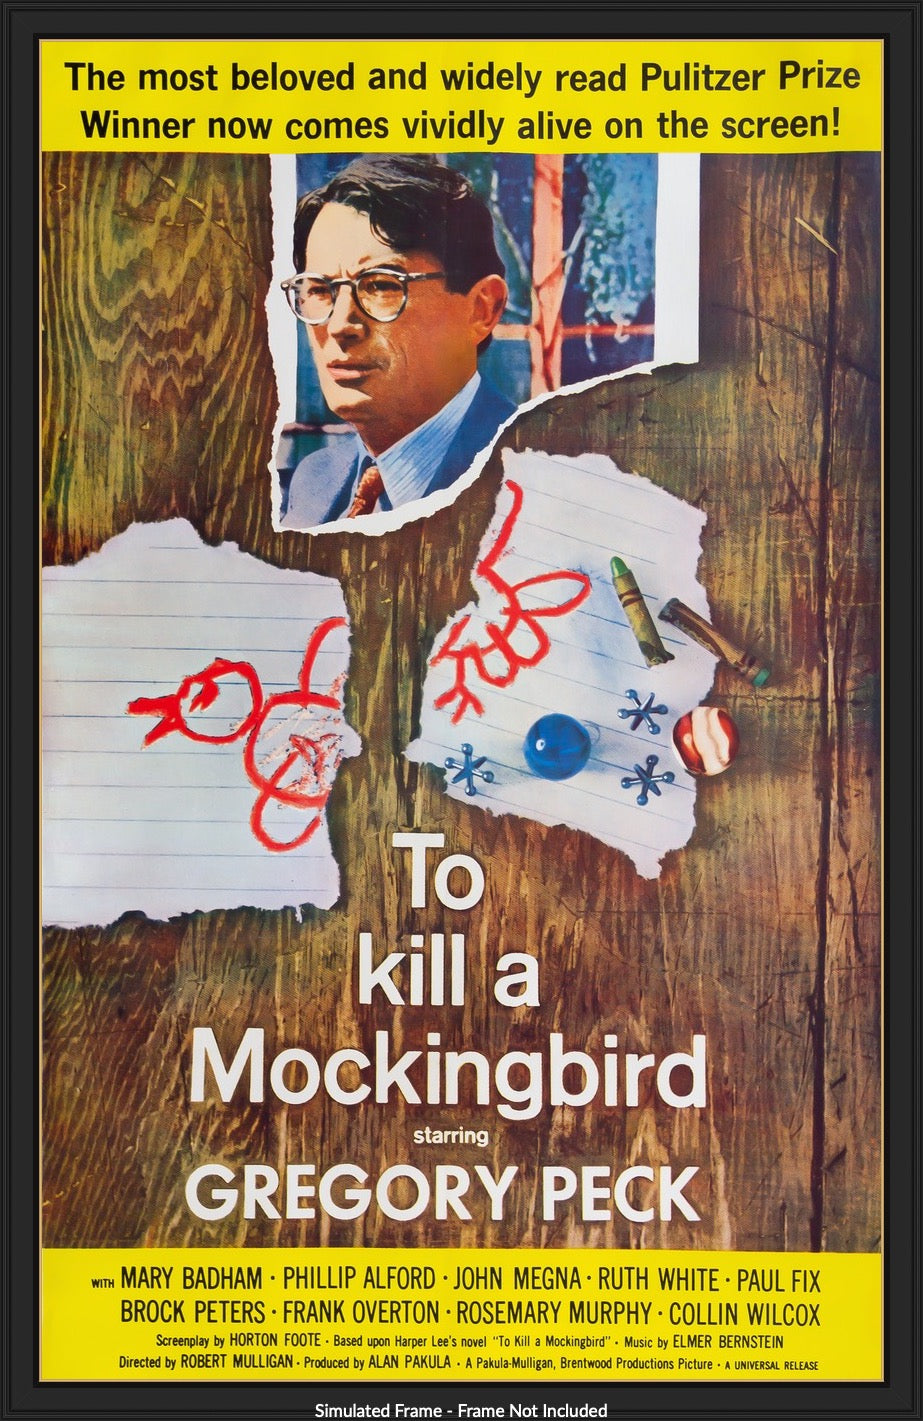 To Kill a Mockingbird (1962) original movie poster for sale at Original Film Art